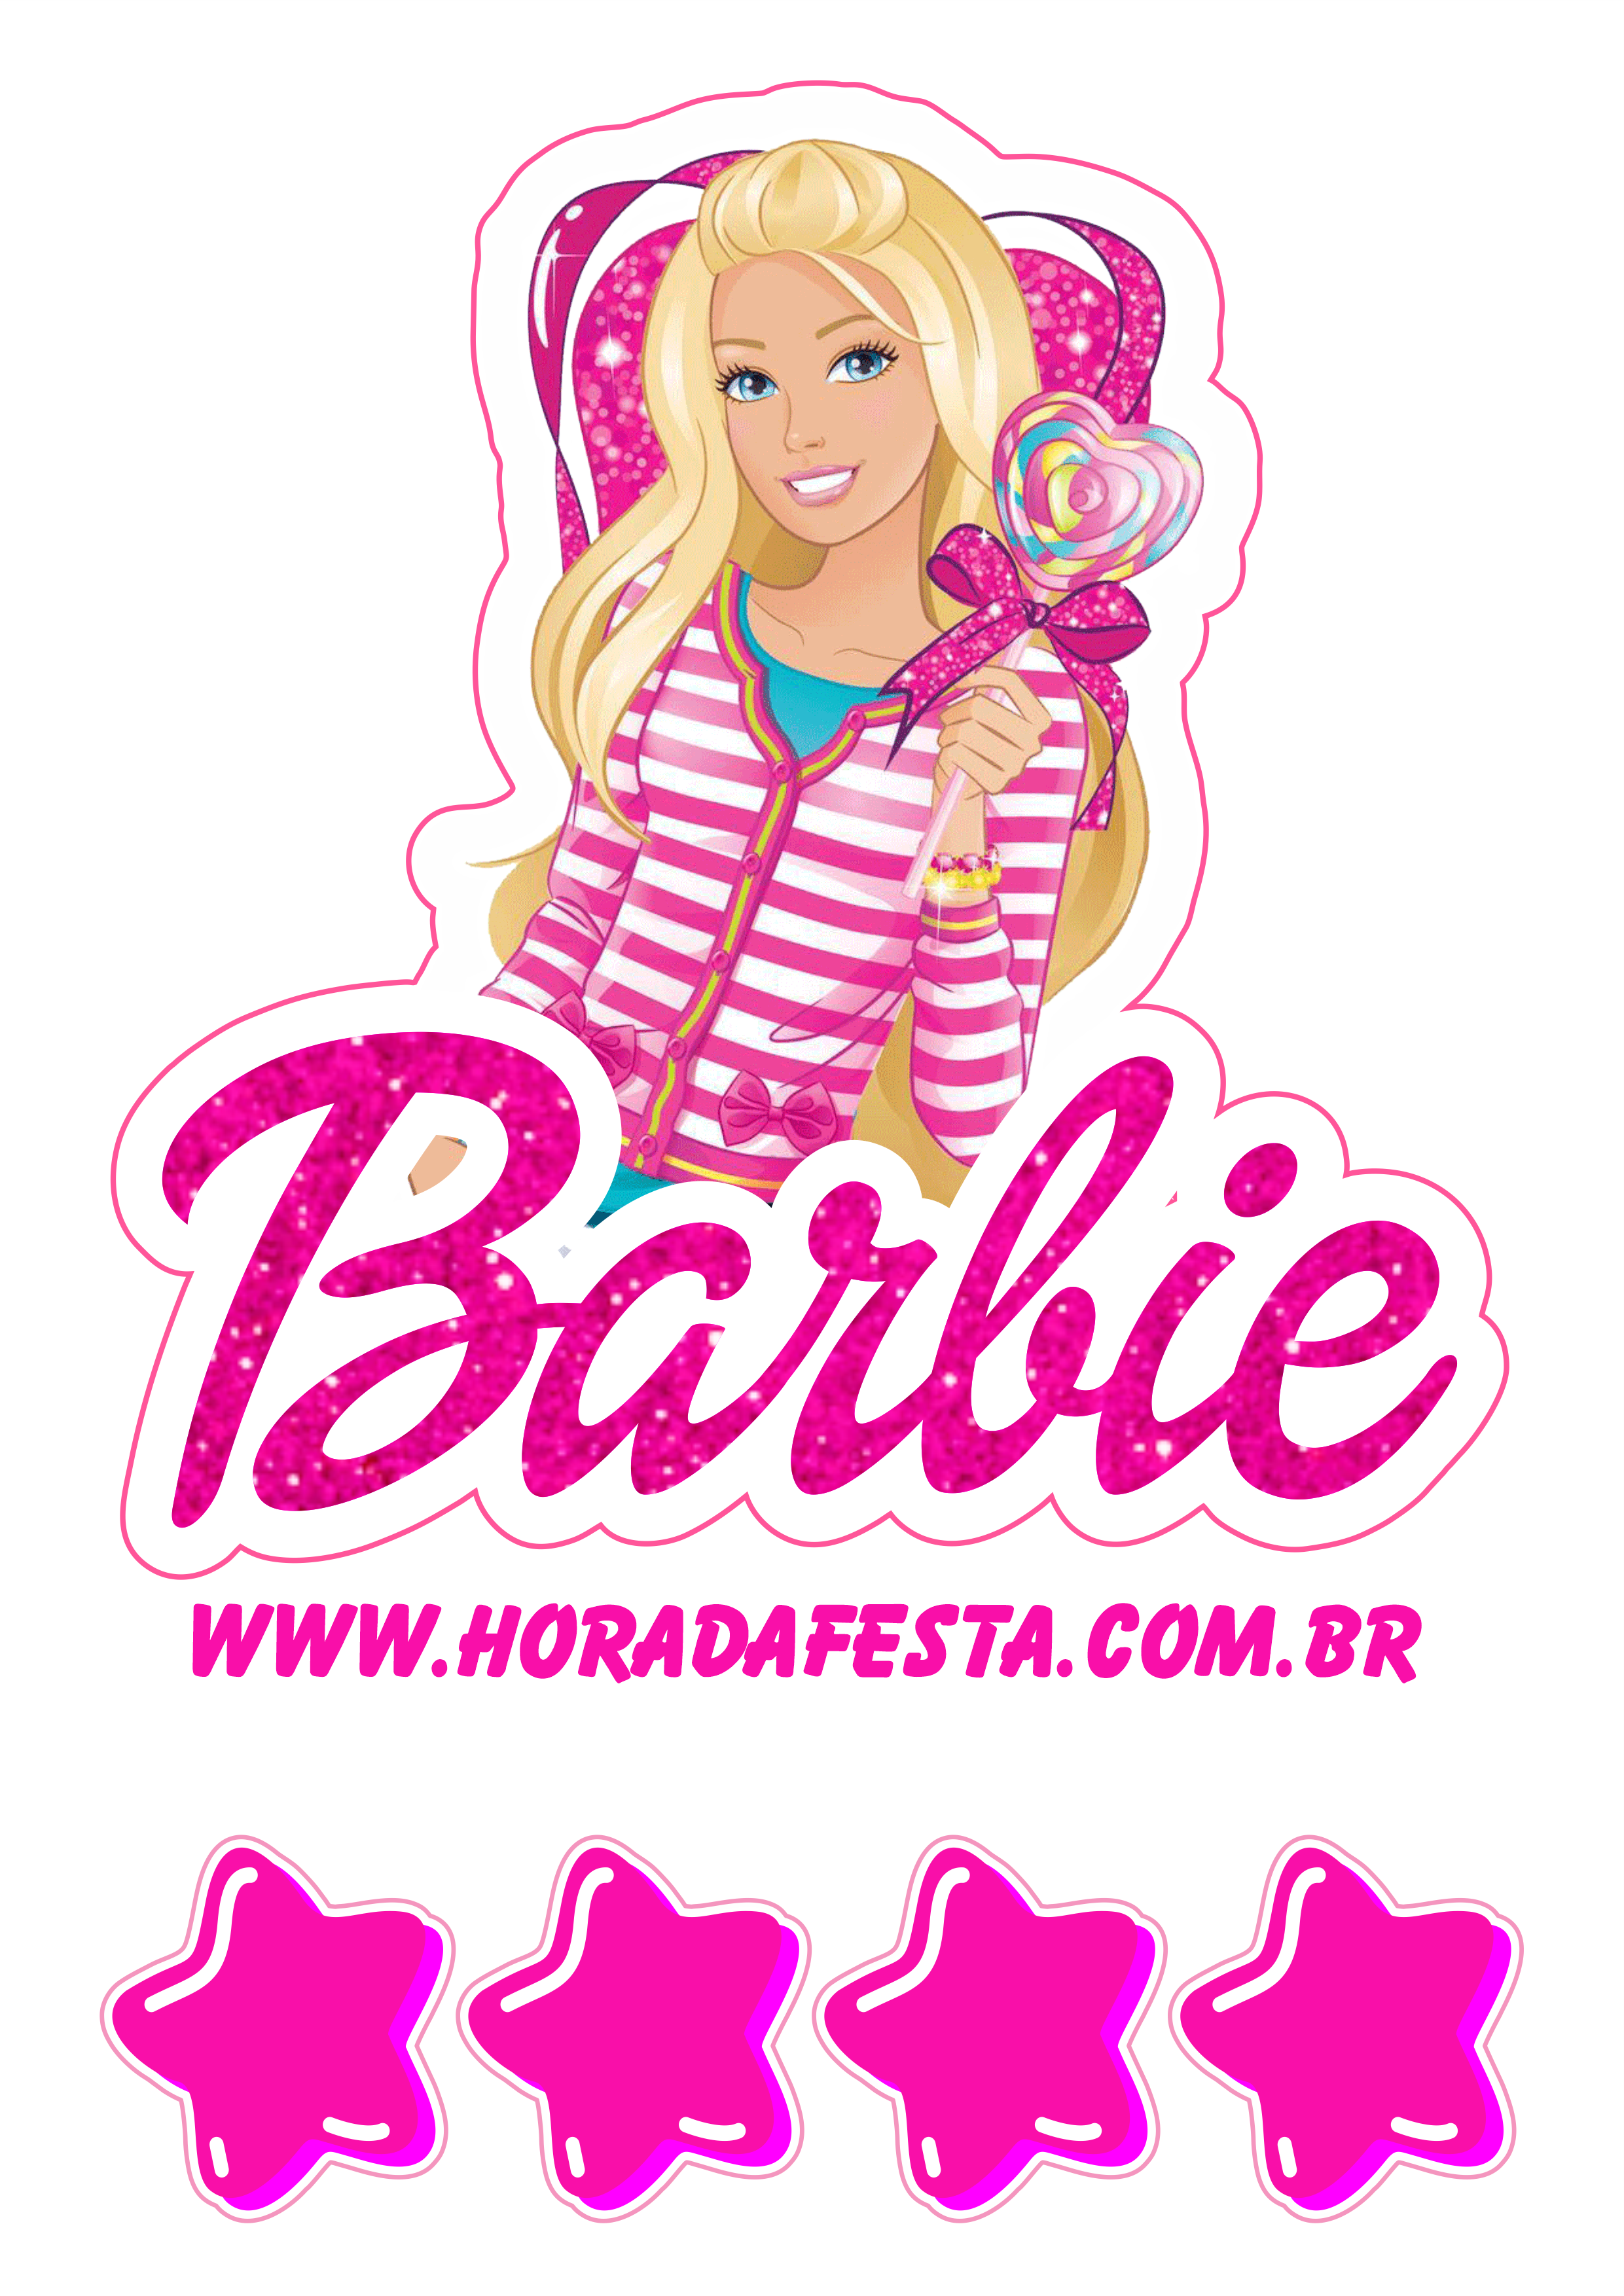 Barbie adolescente fashion moda festa de aniversário decoração topo de bolo para baixar artes gráficas png